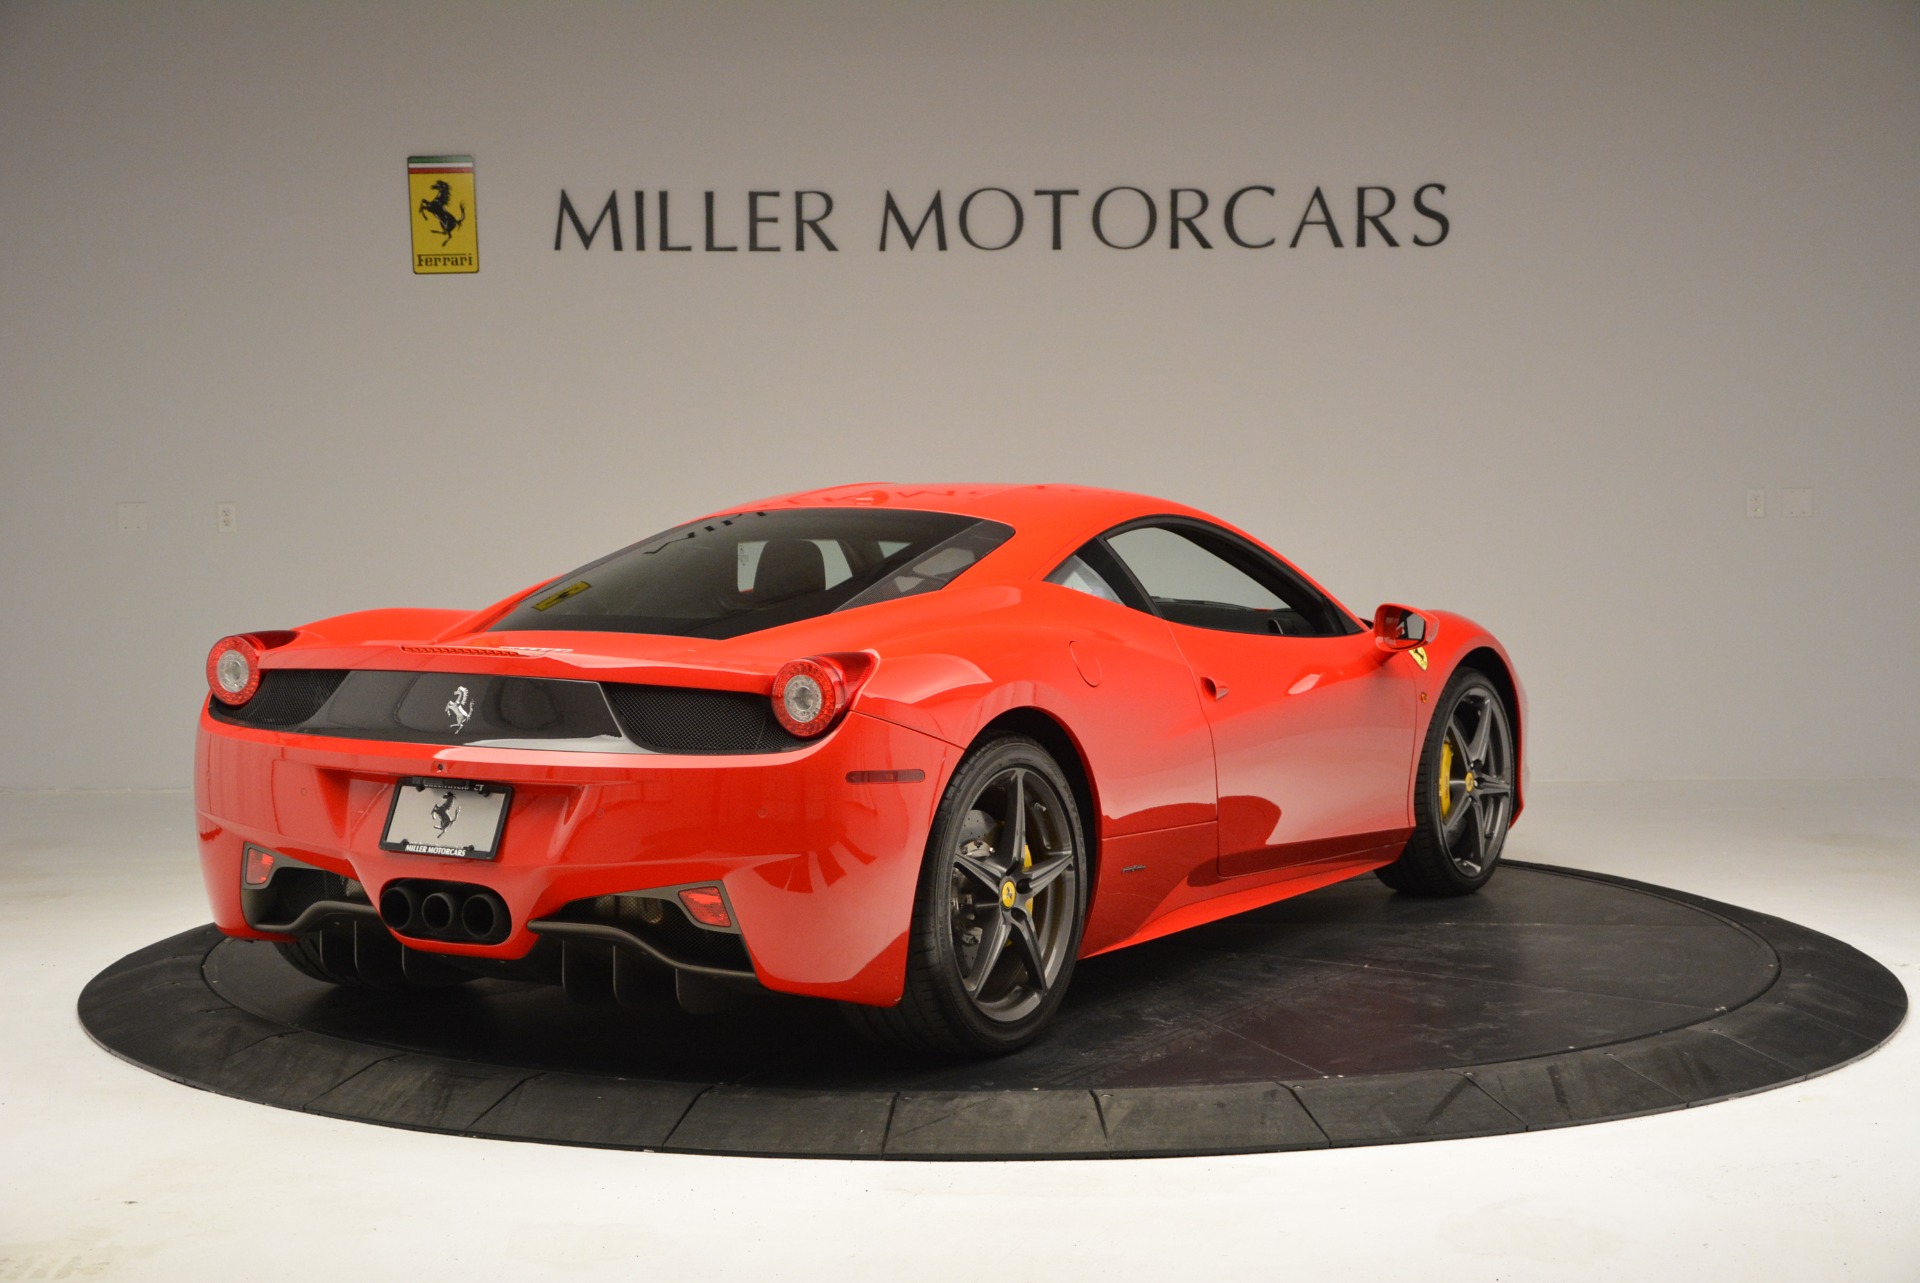 Pre Owned 2013 Ferrari 458 Italia For Sale Miller